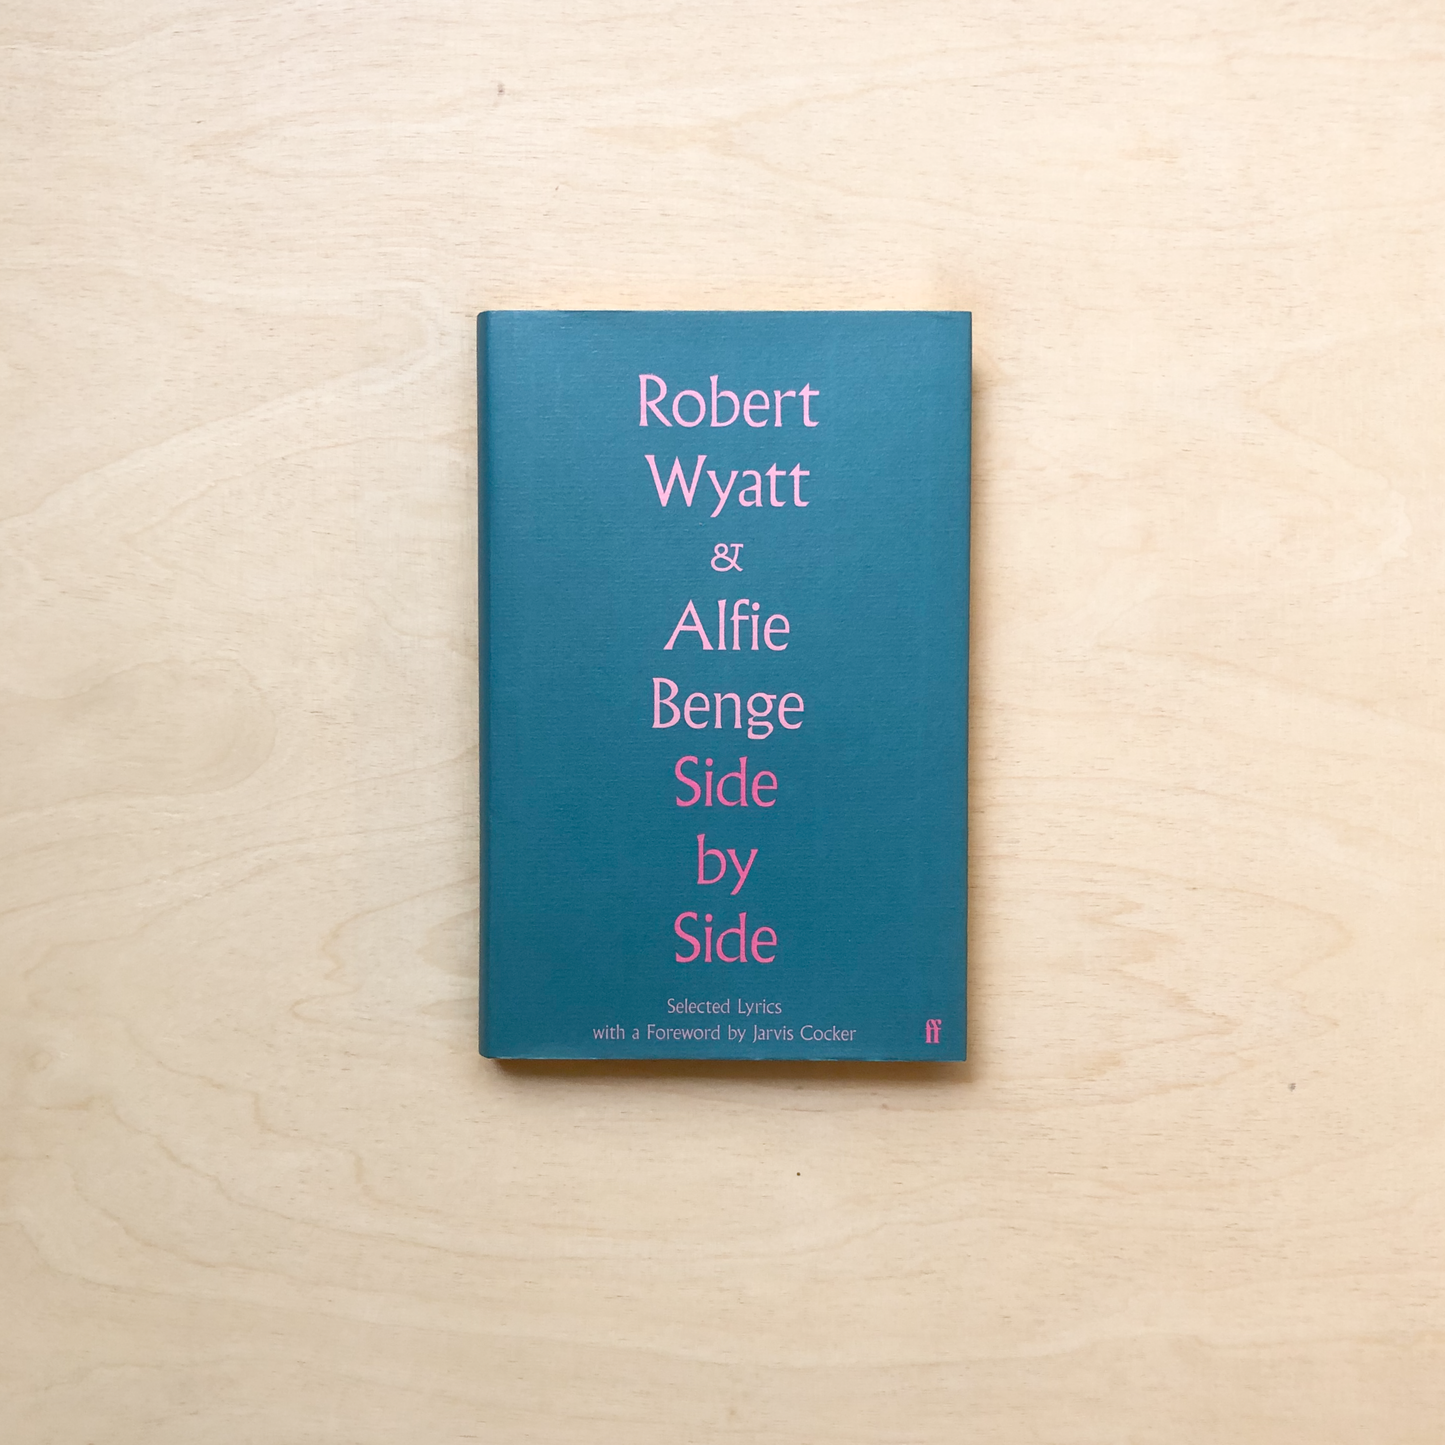 Side by Side: Selected Lyrics by Robert Wyatt & Alfie Benge